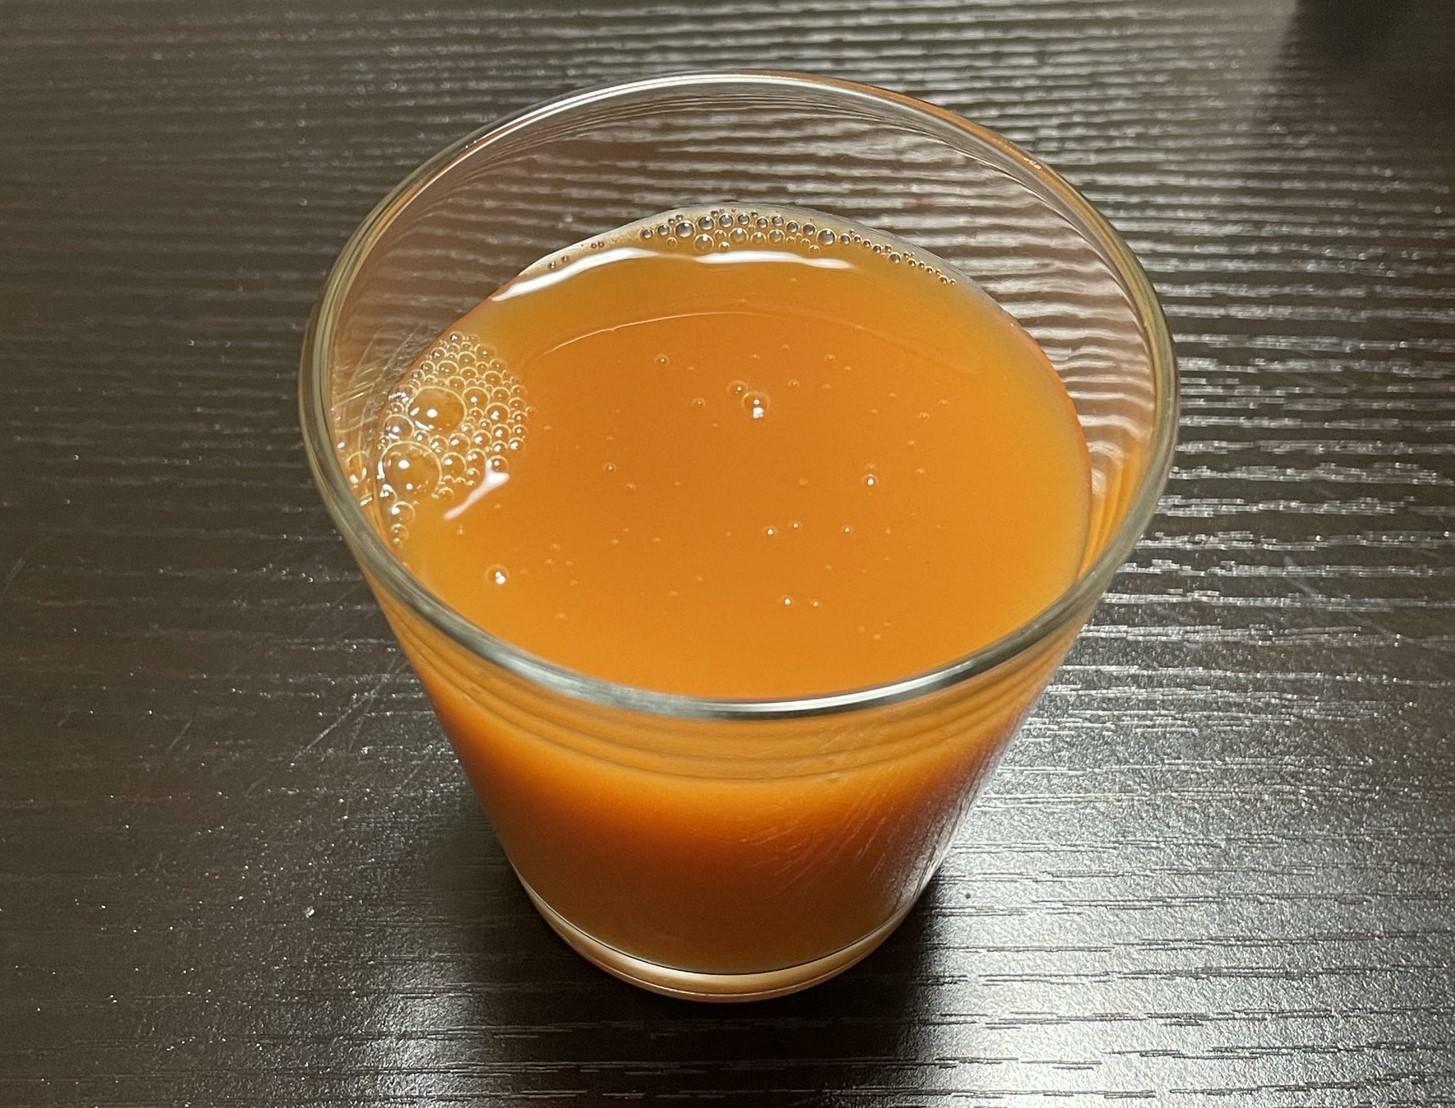 グラスに移すと、オレンジ色のミックスジュース。野菜のあまい香りがしてきます